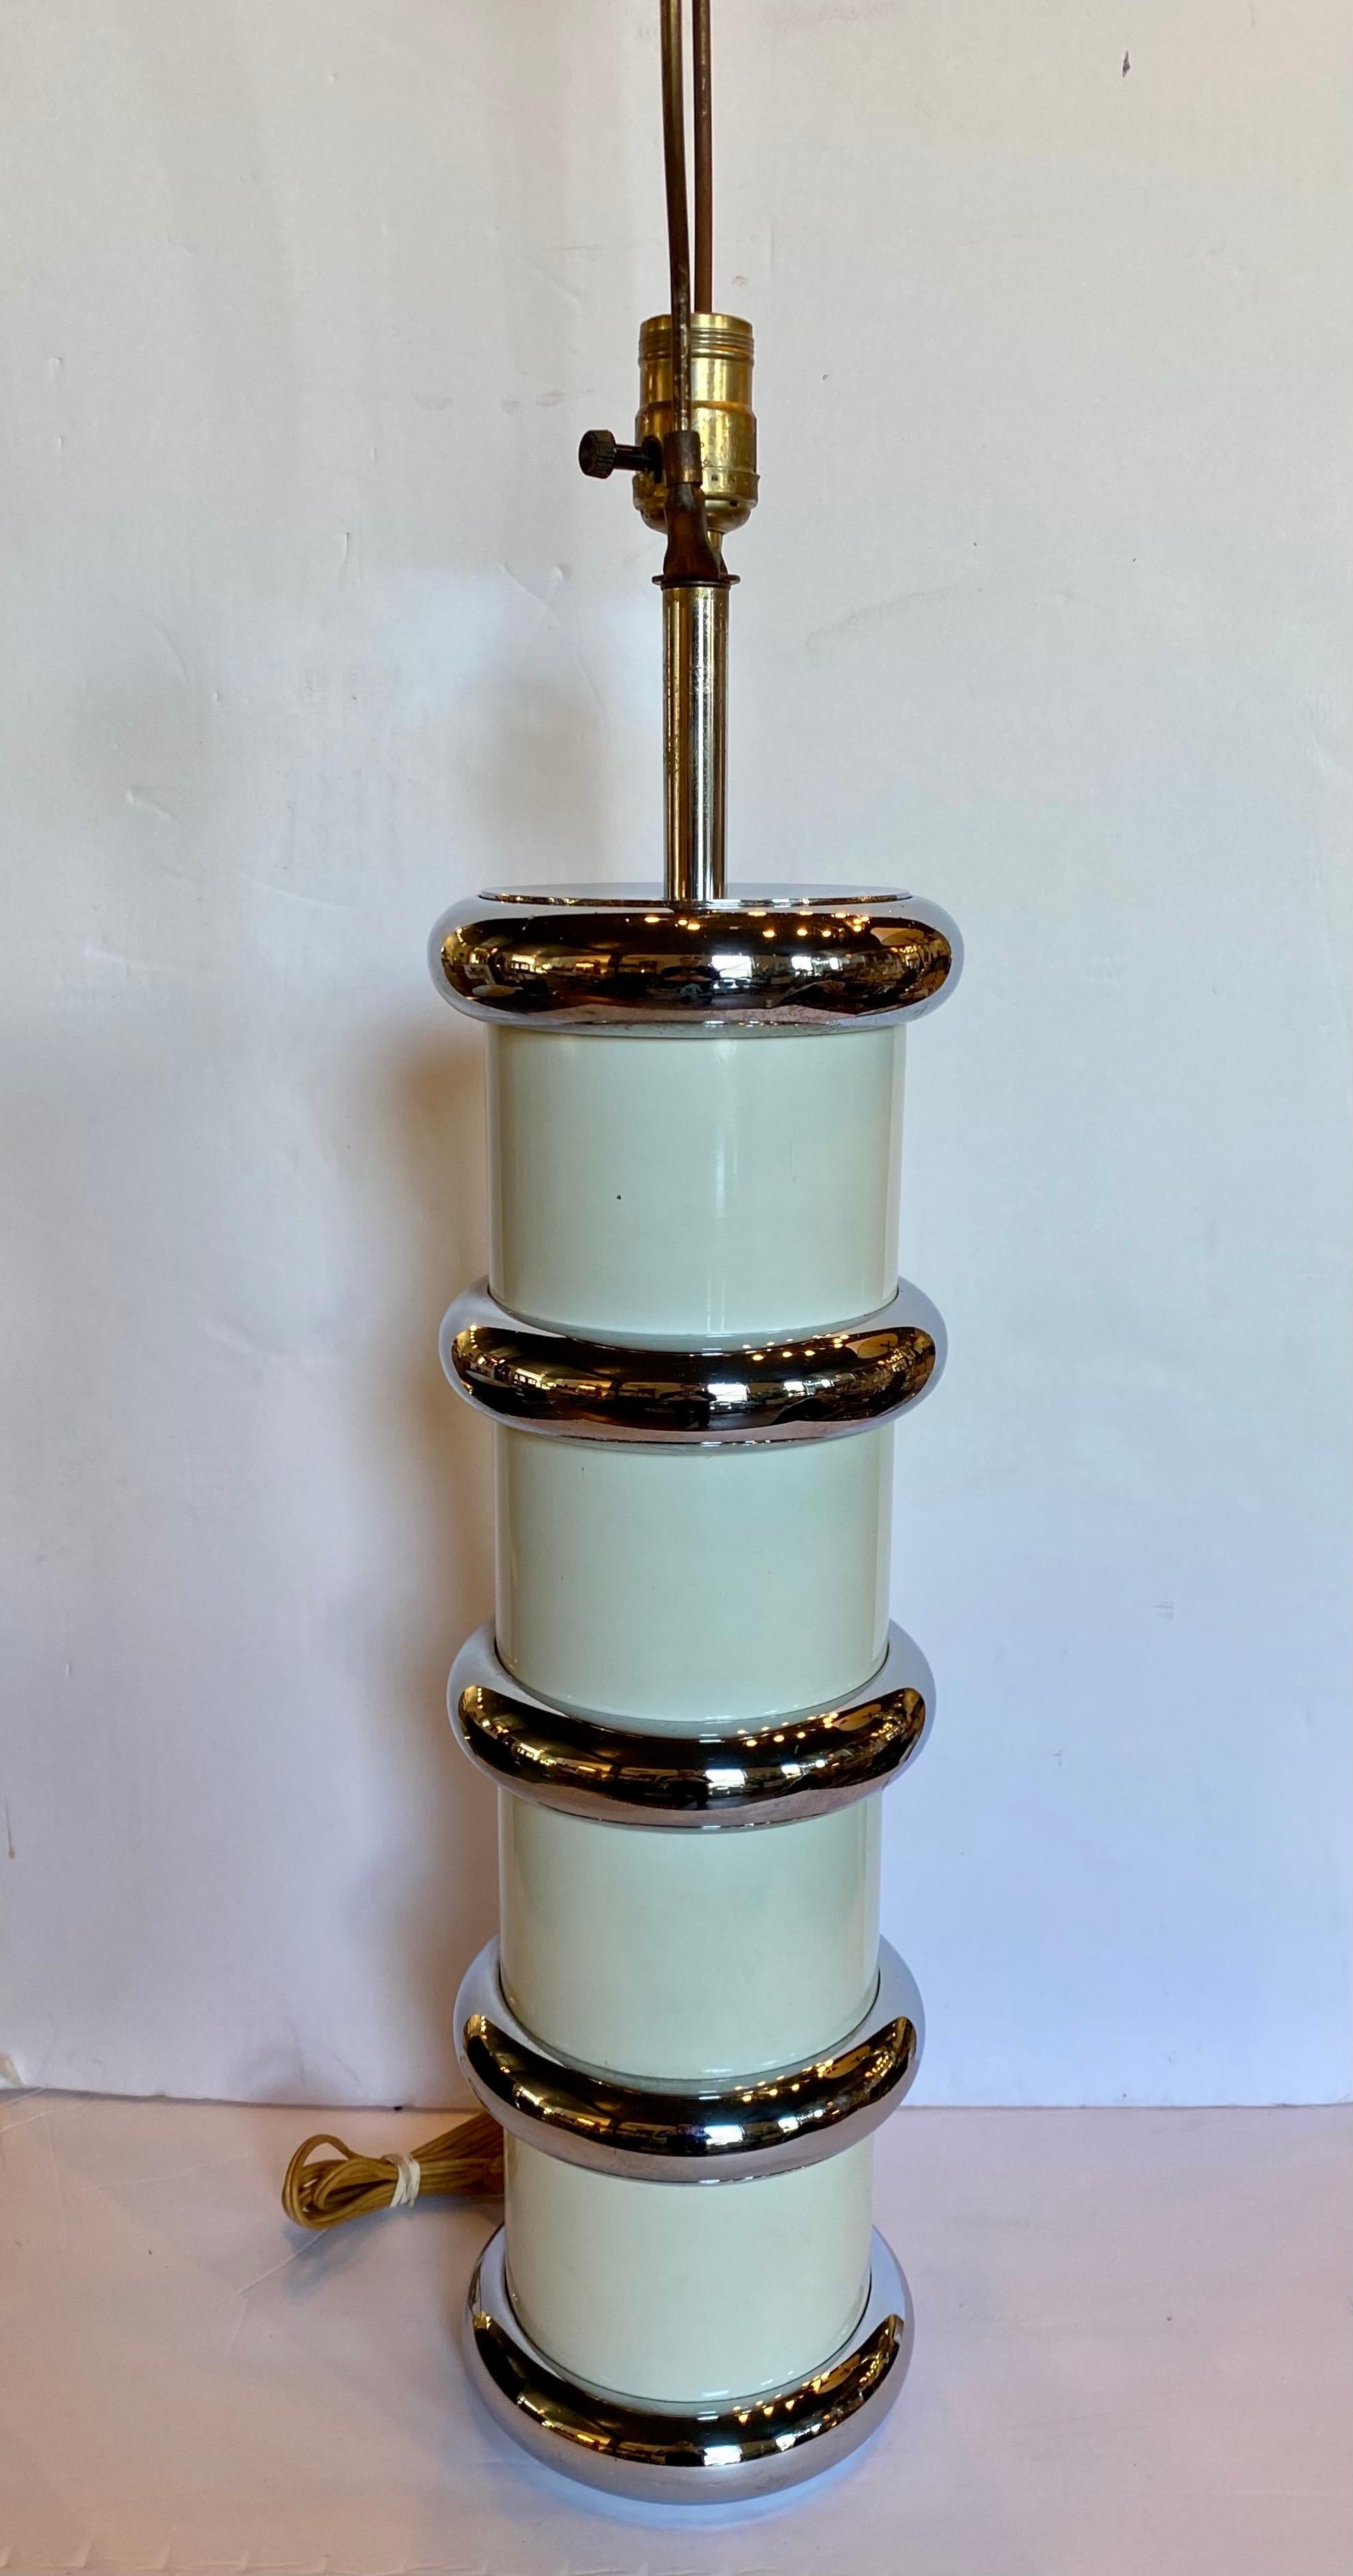 Lampe de table en métal chromé et émail du milieu du siècle par Mutual Sunset Lamp Company. Cette lampe ronde de forme cylindrique présente une colonne émaillée ivoire/crème entourée d'anneaux en métal chromé empilés. Dans le style de Karl Springer.